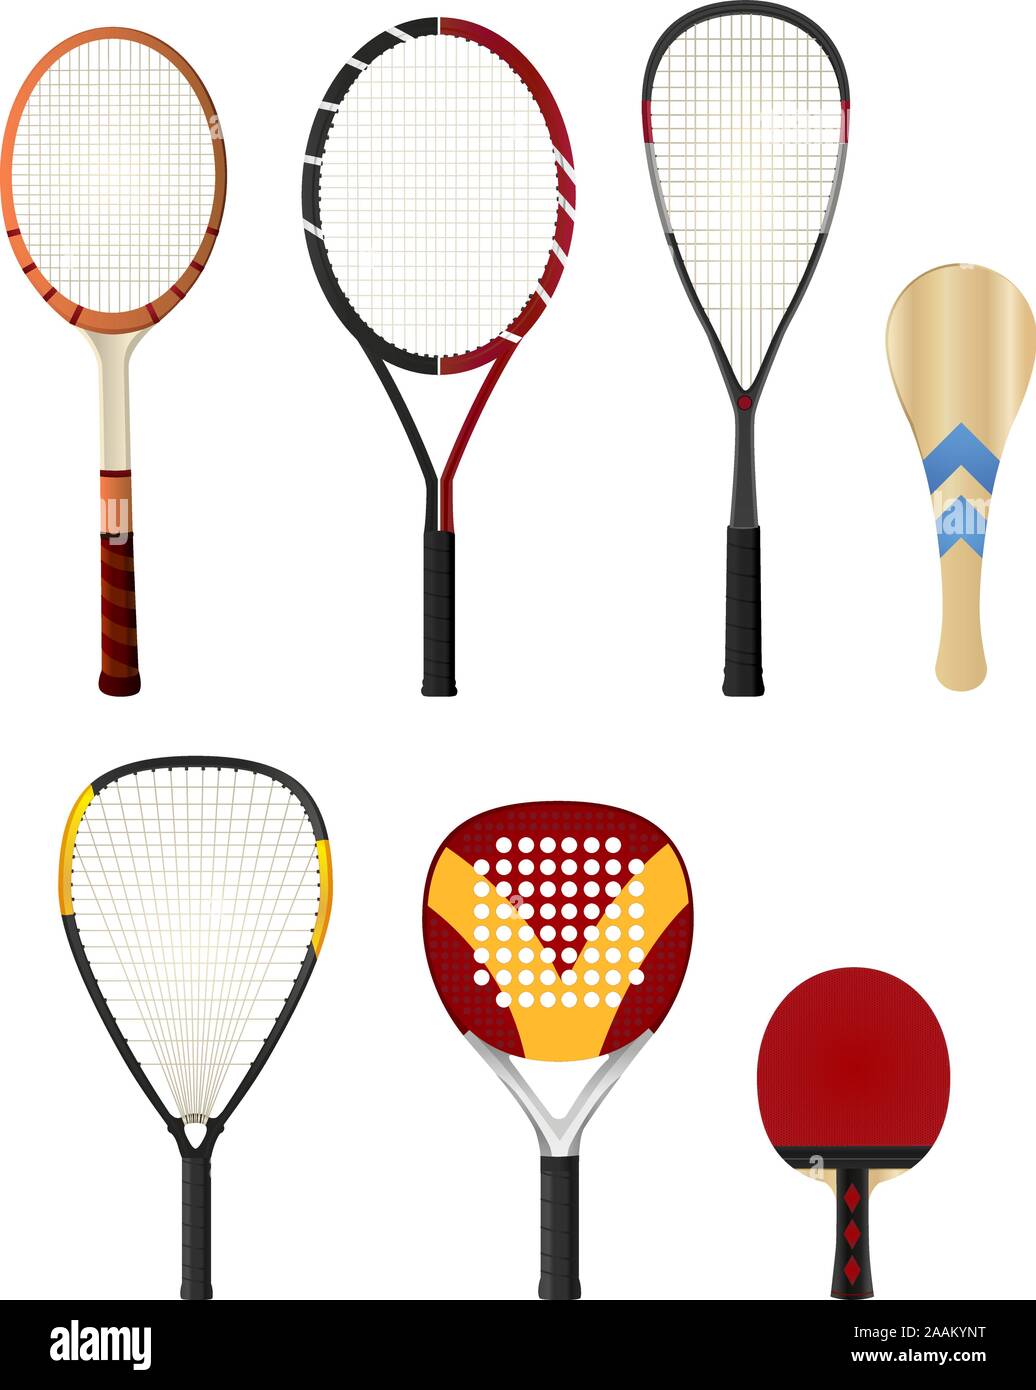 Silhouette couleur avec raquettes, raquette de tennis, raquette de squash, raquette de ping-pong, raquette paddle. Vector illustration set. Illustration de Vecteur